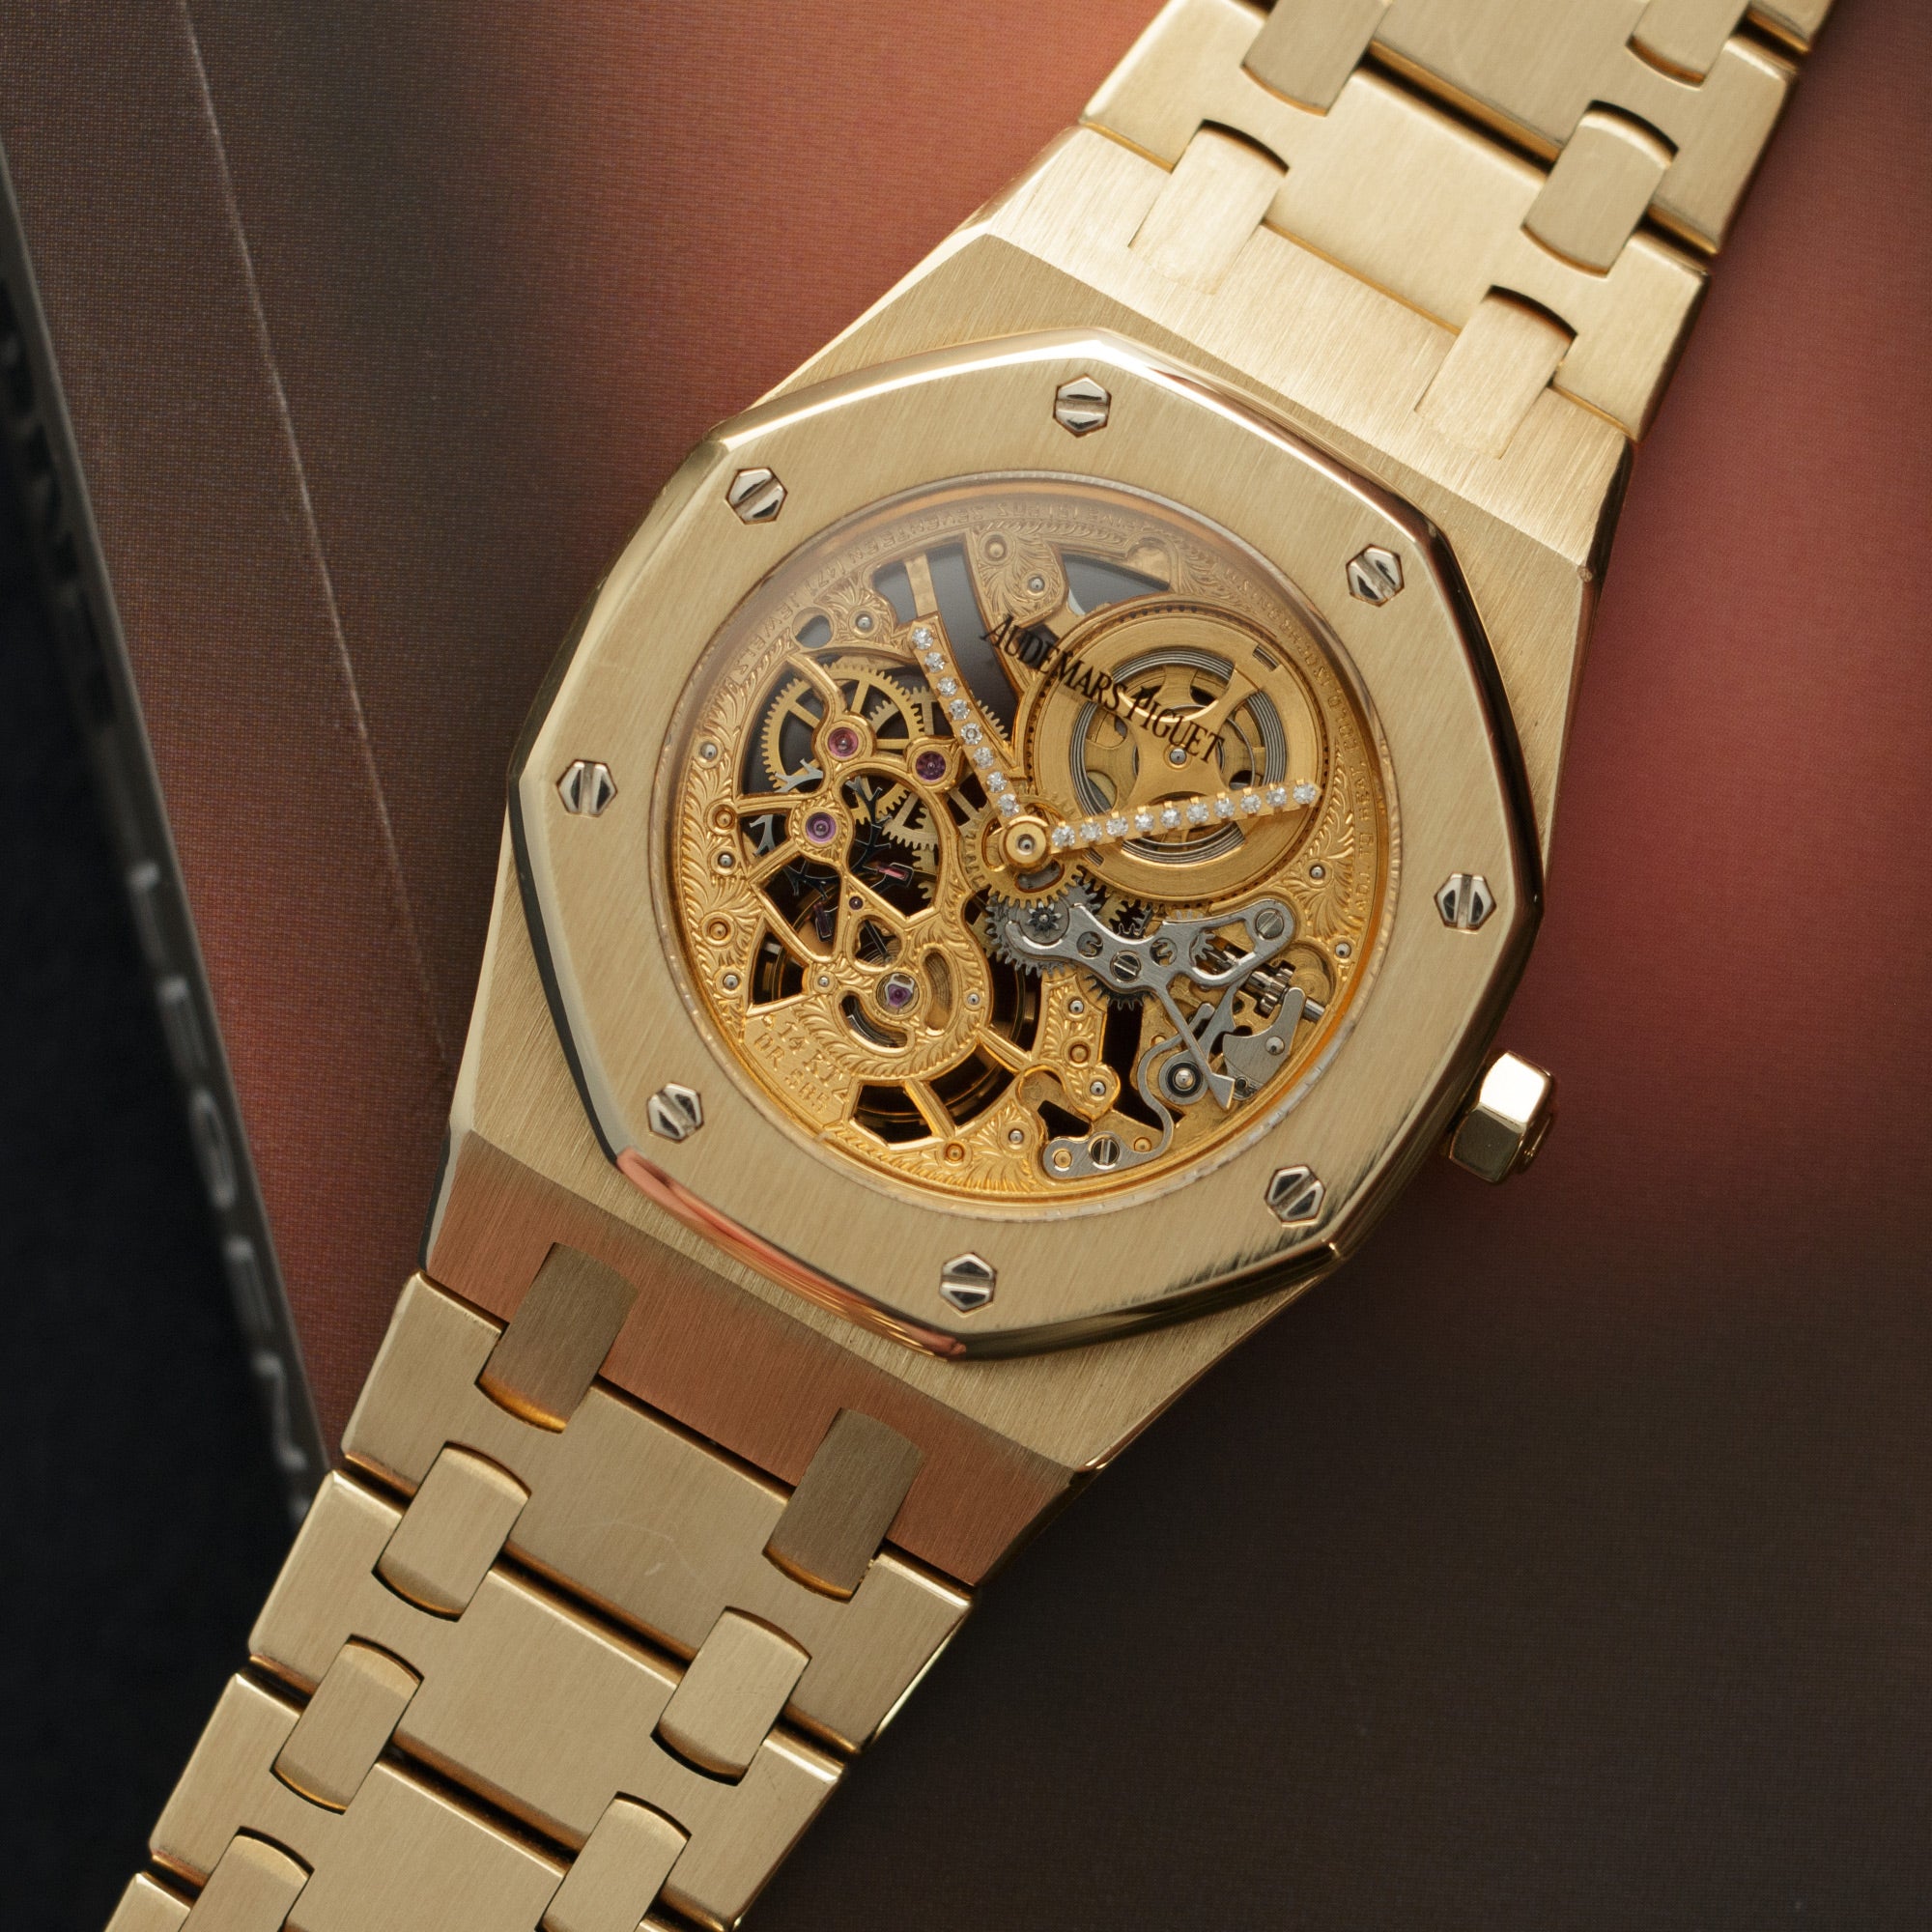 Audemars Piguet - Audemars Piguet Yellow Gold Skeleton Watch - The Keystone Watches